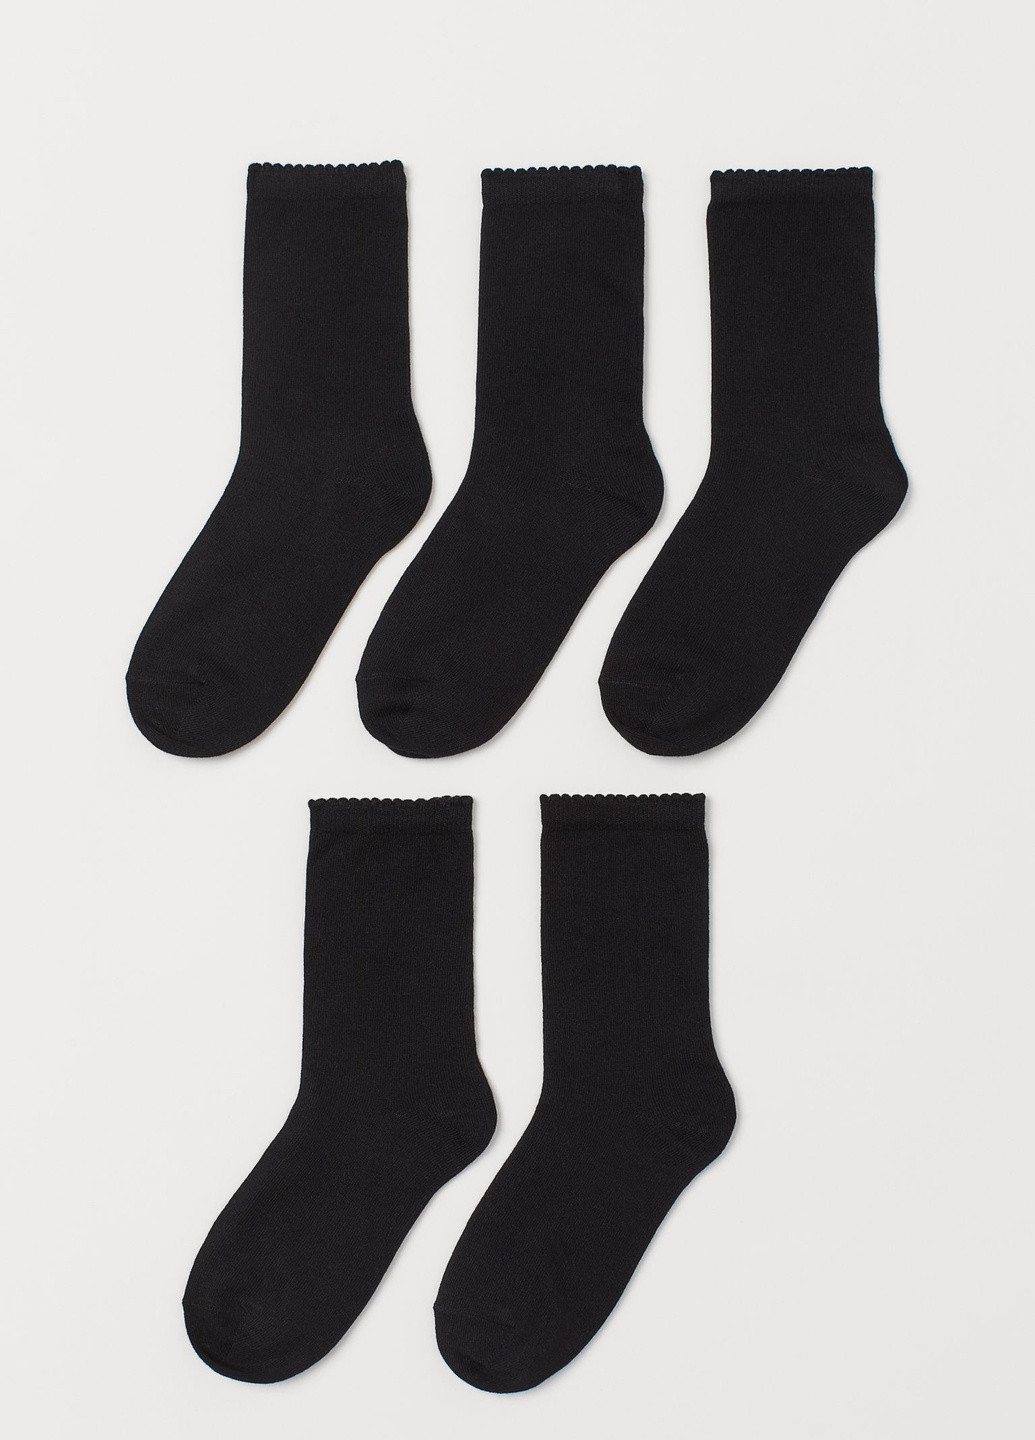 Носки (5 пар) H&M однотонные чёрные повседневные